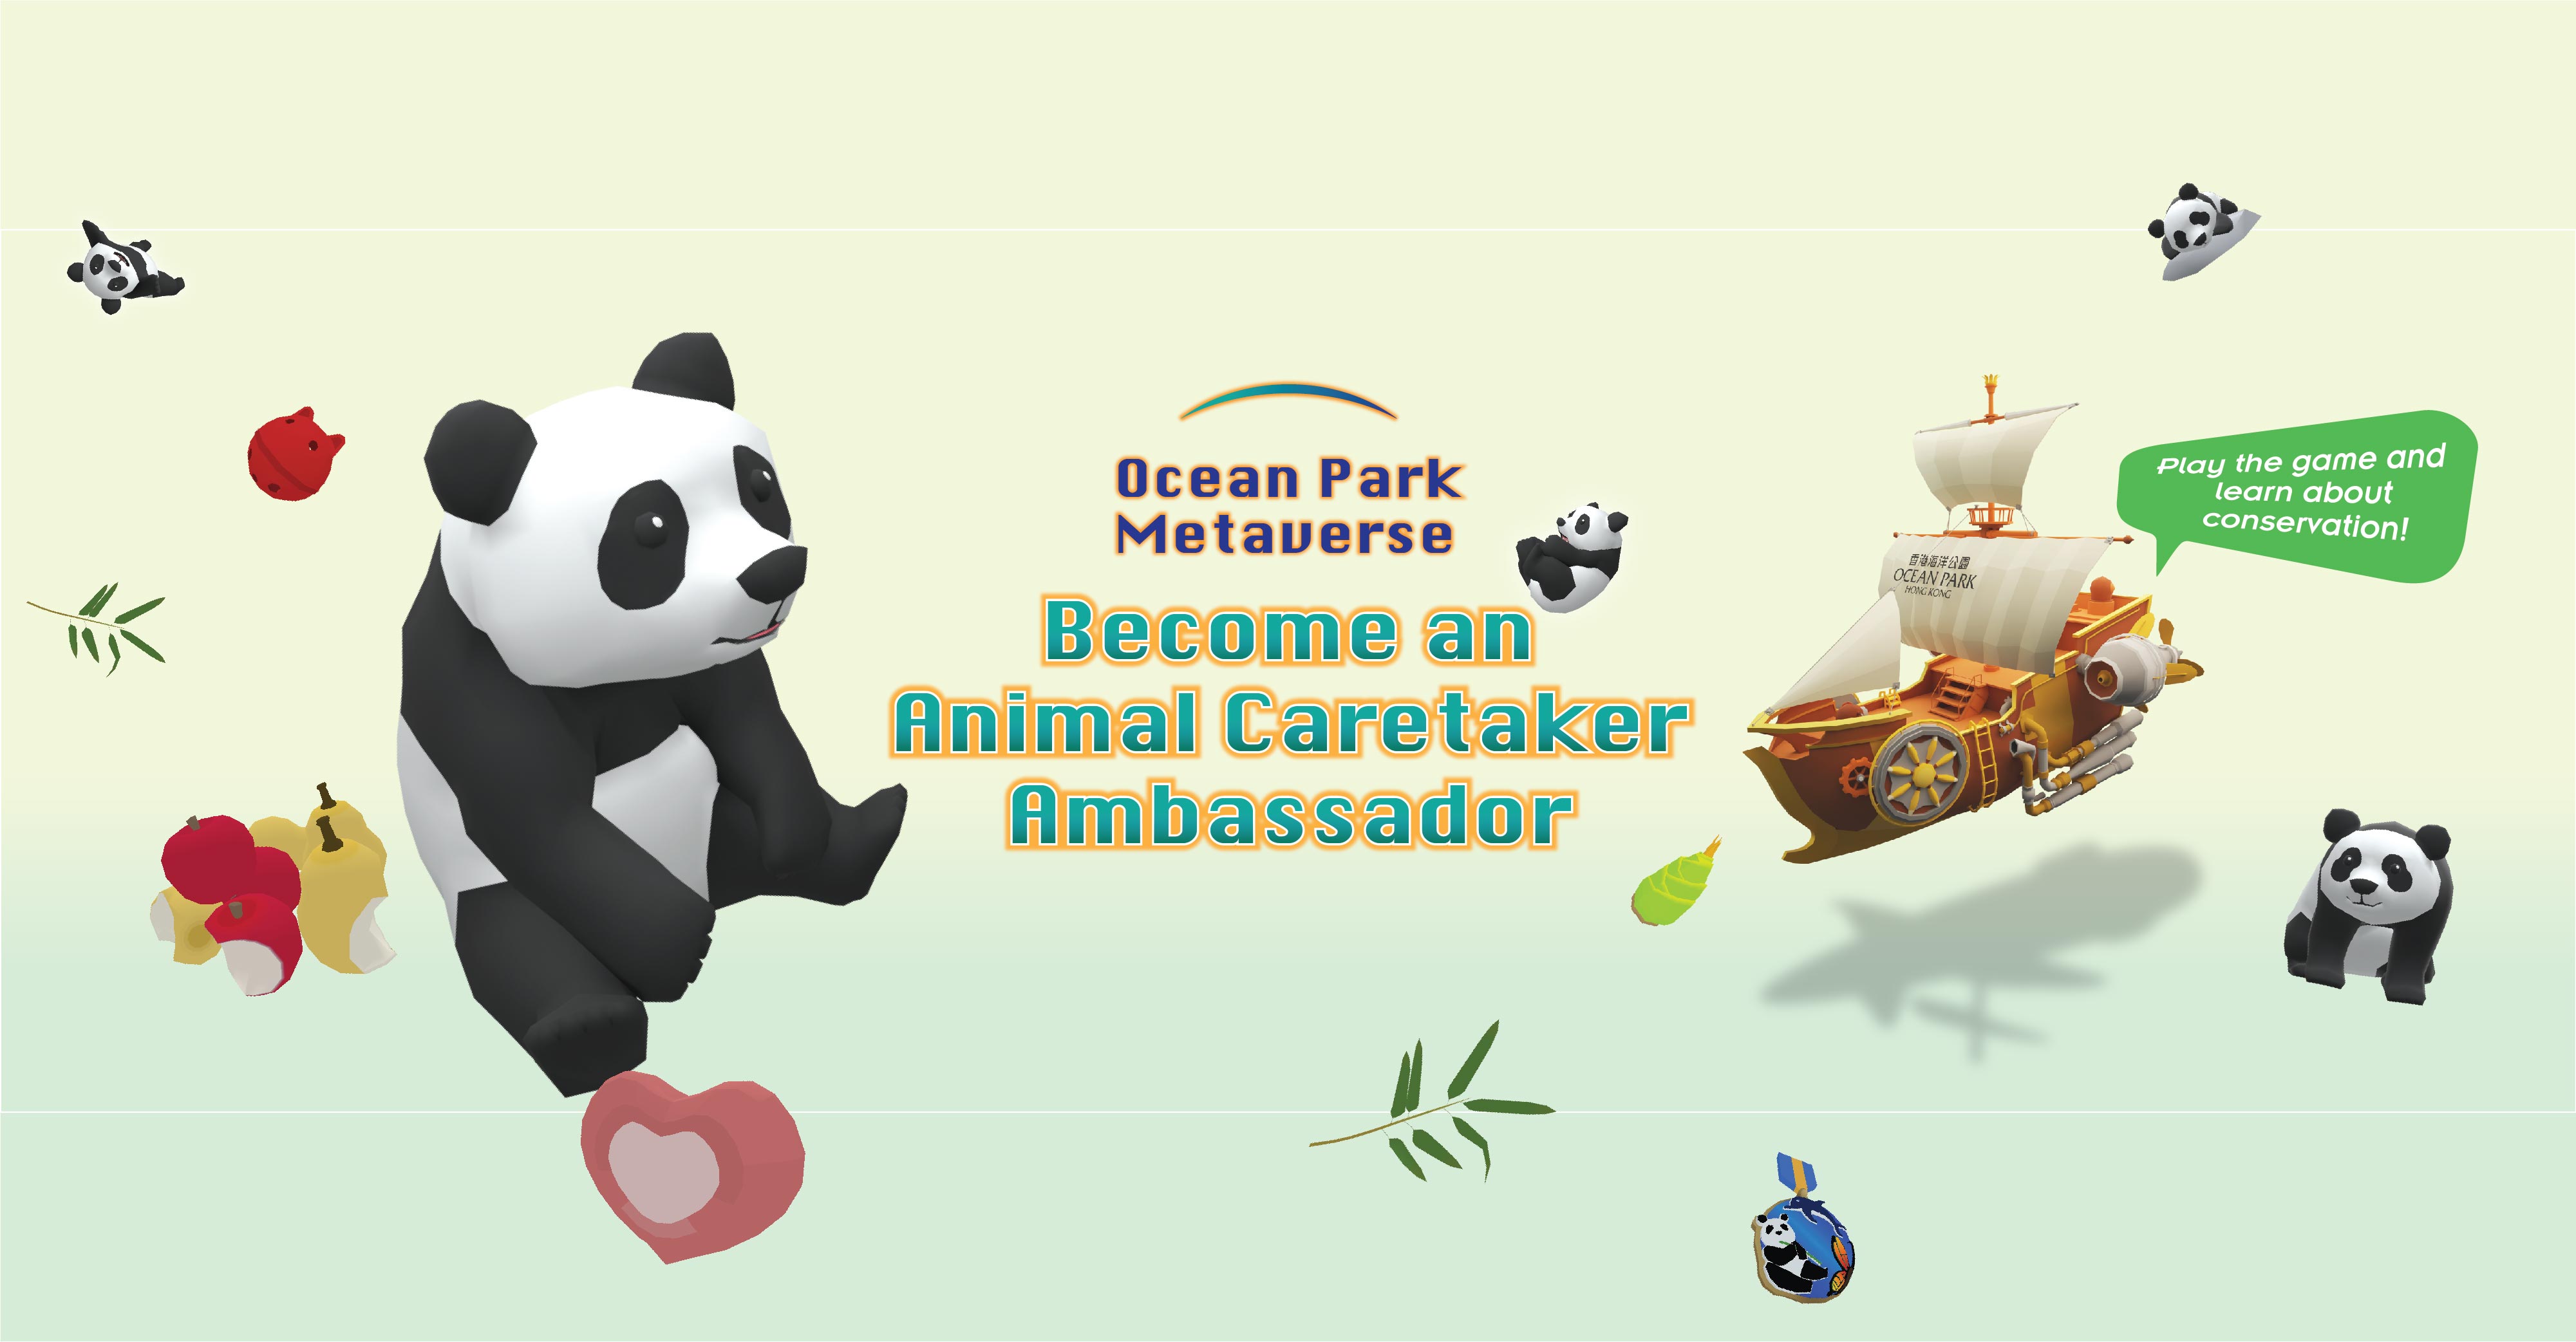 http://media.oceanpark.com.hk/files/s3fs-public/op-AiR-desktop-innerpage-en.jpg